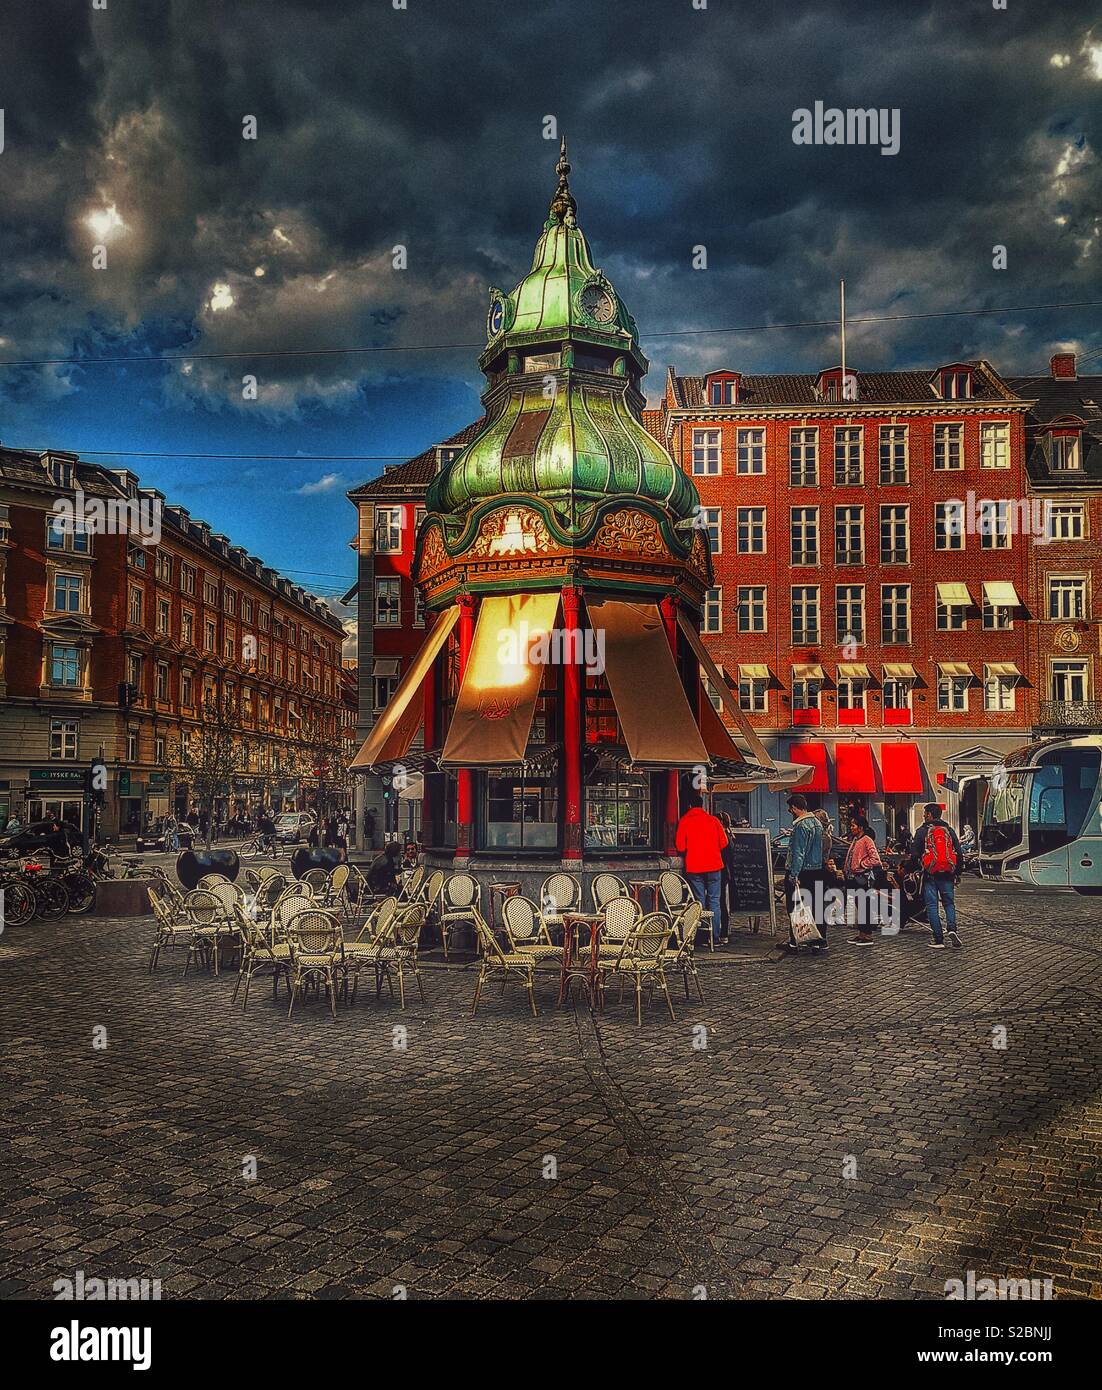 Cafe kiosque, de Kongens Nytorv (la nouvelle Place du Roi), Copenhague, Danemark. Construit en 1913 dans un style néo-baroque, elle a un toit recouvert de cuivre et de l'ornementation sculptée à la main Banque D'Images